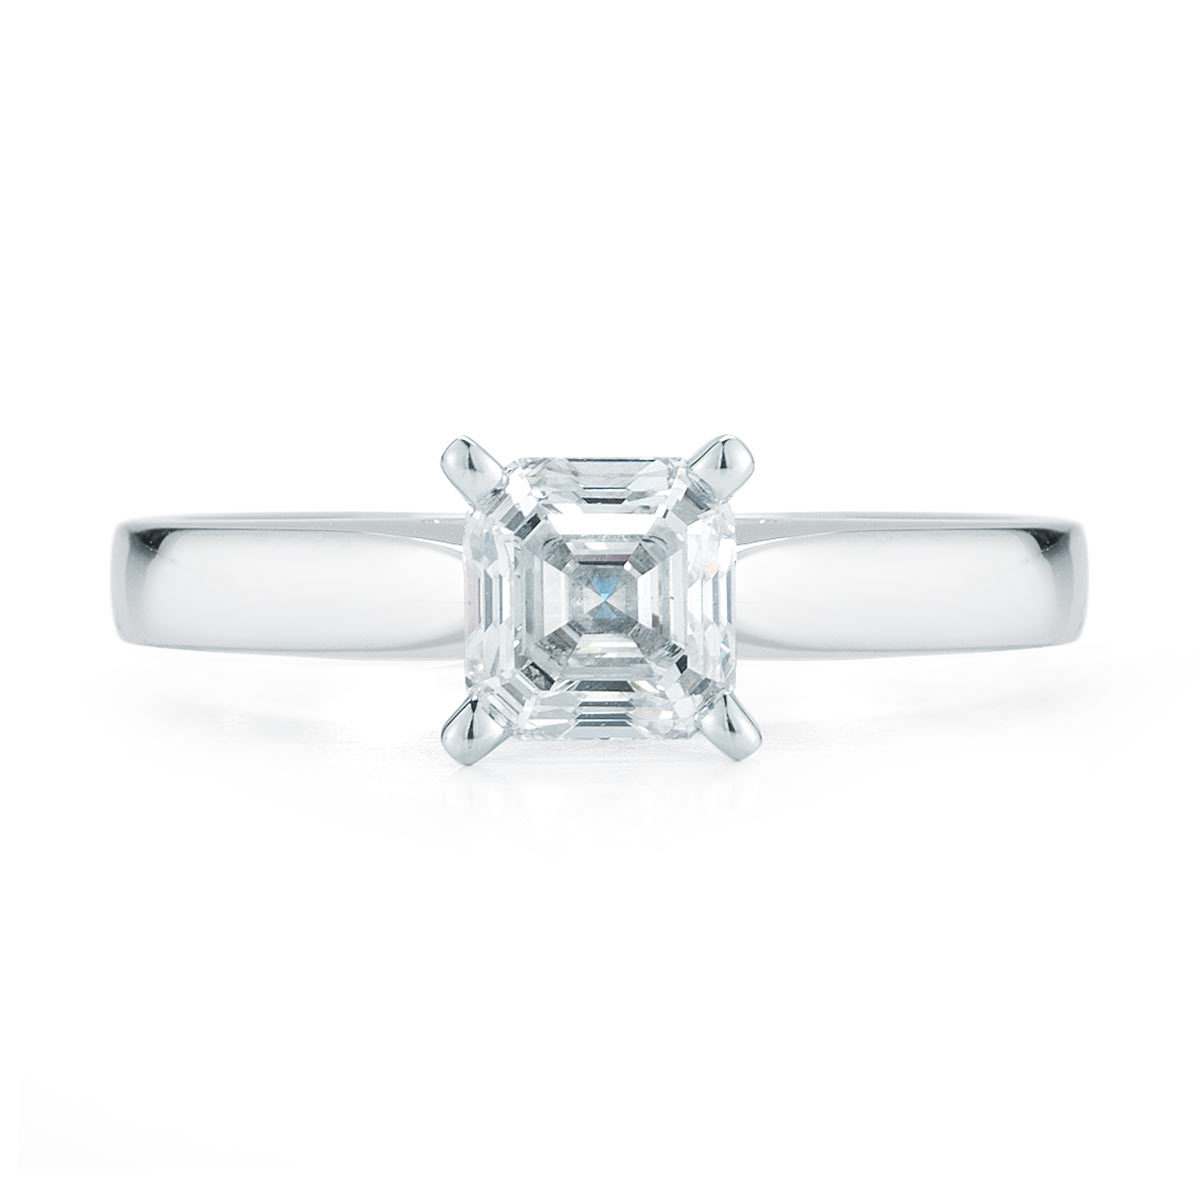 1.0ct Asscher Cut Diamond Solitaire Ring, Platinum